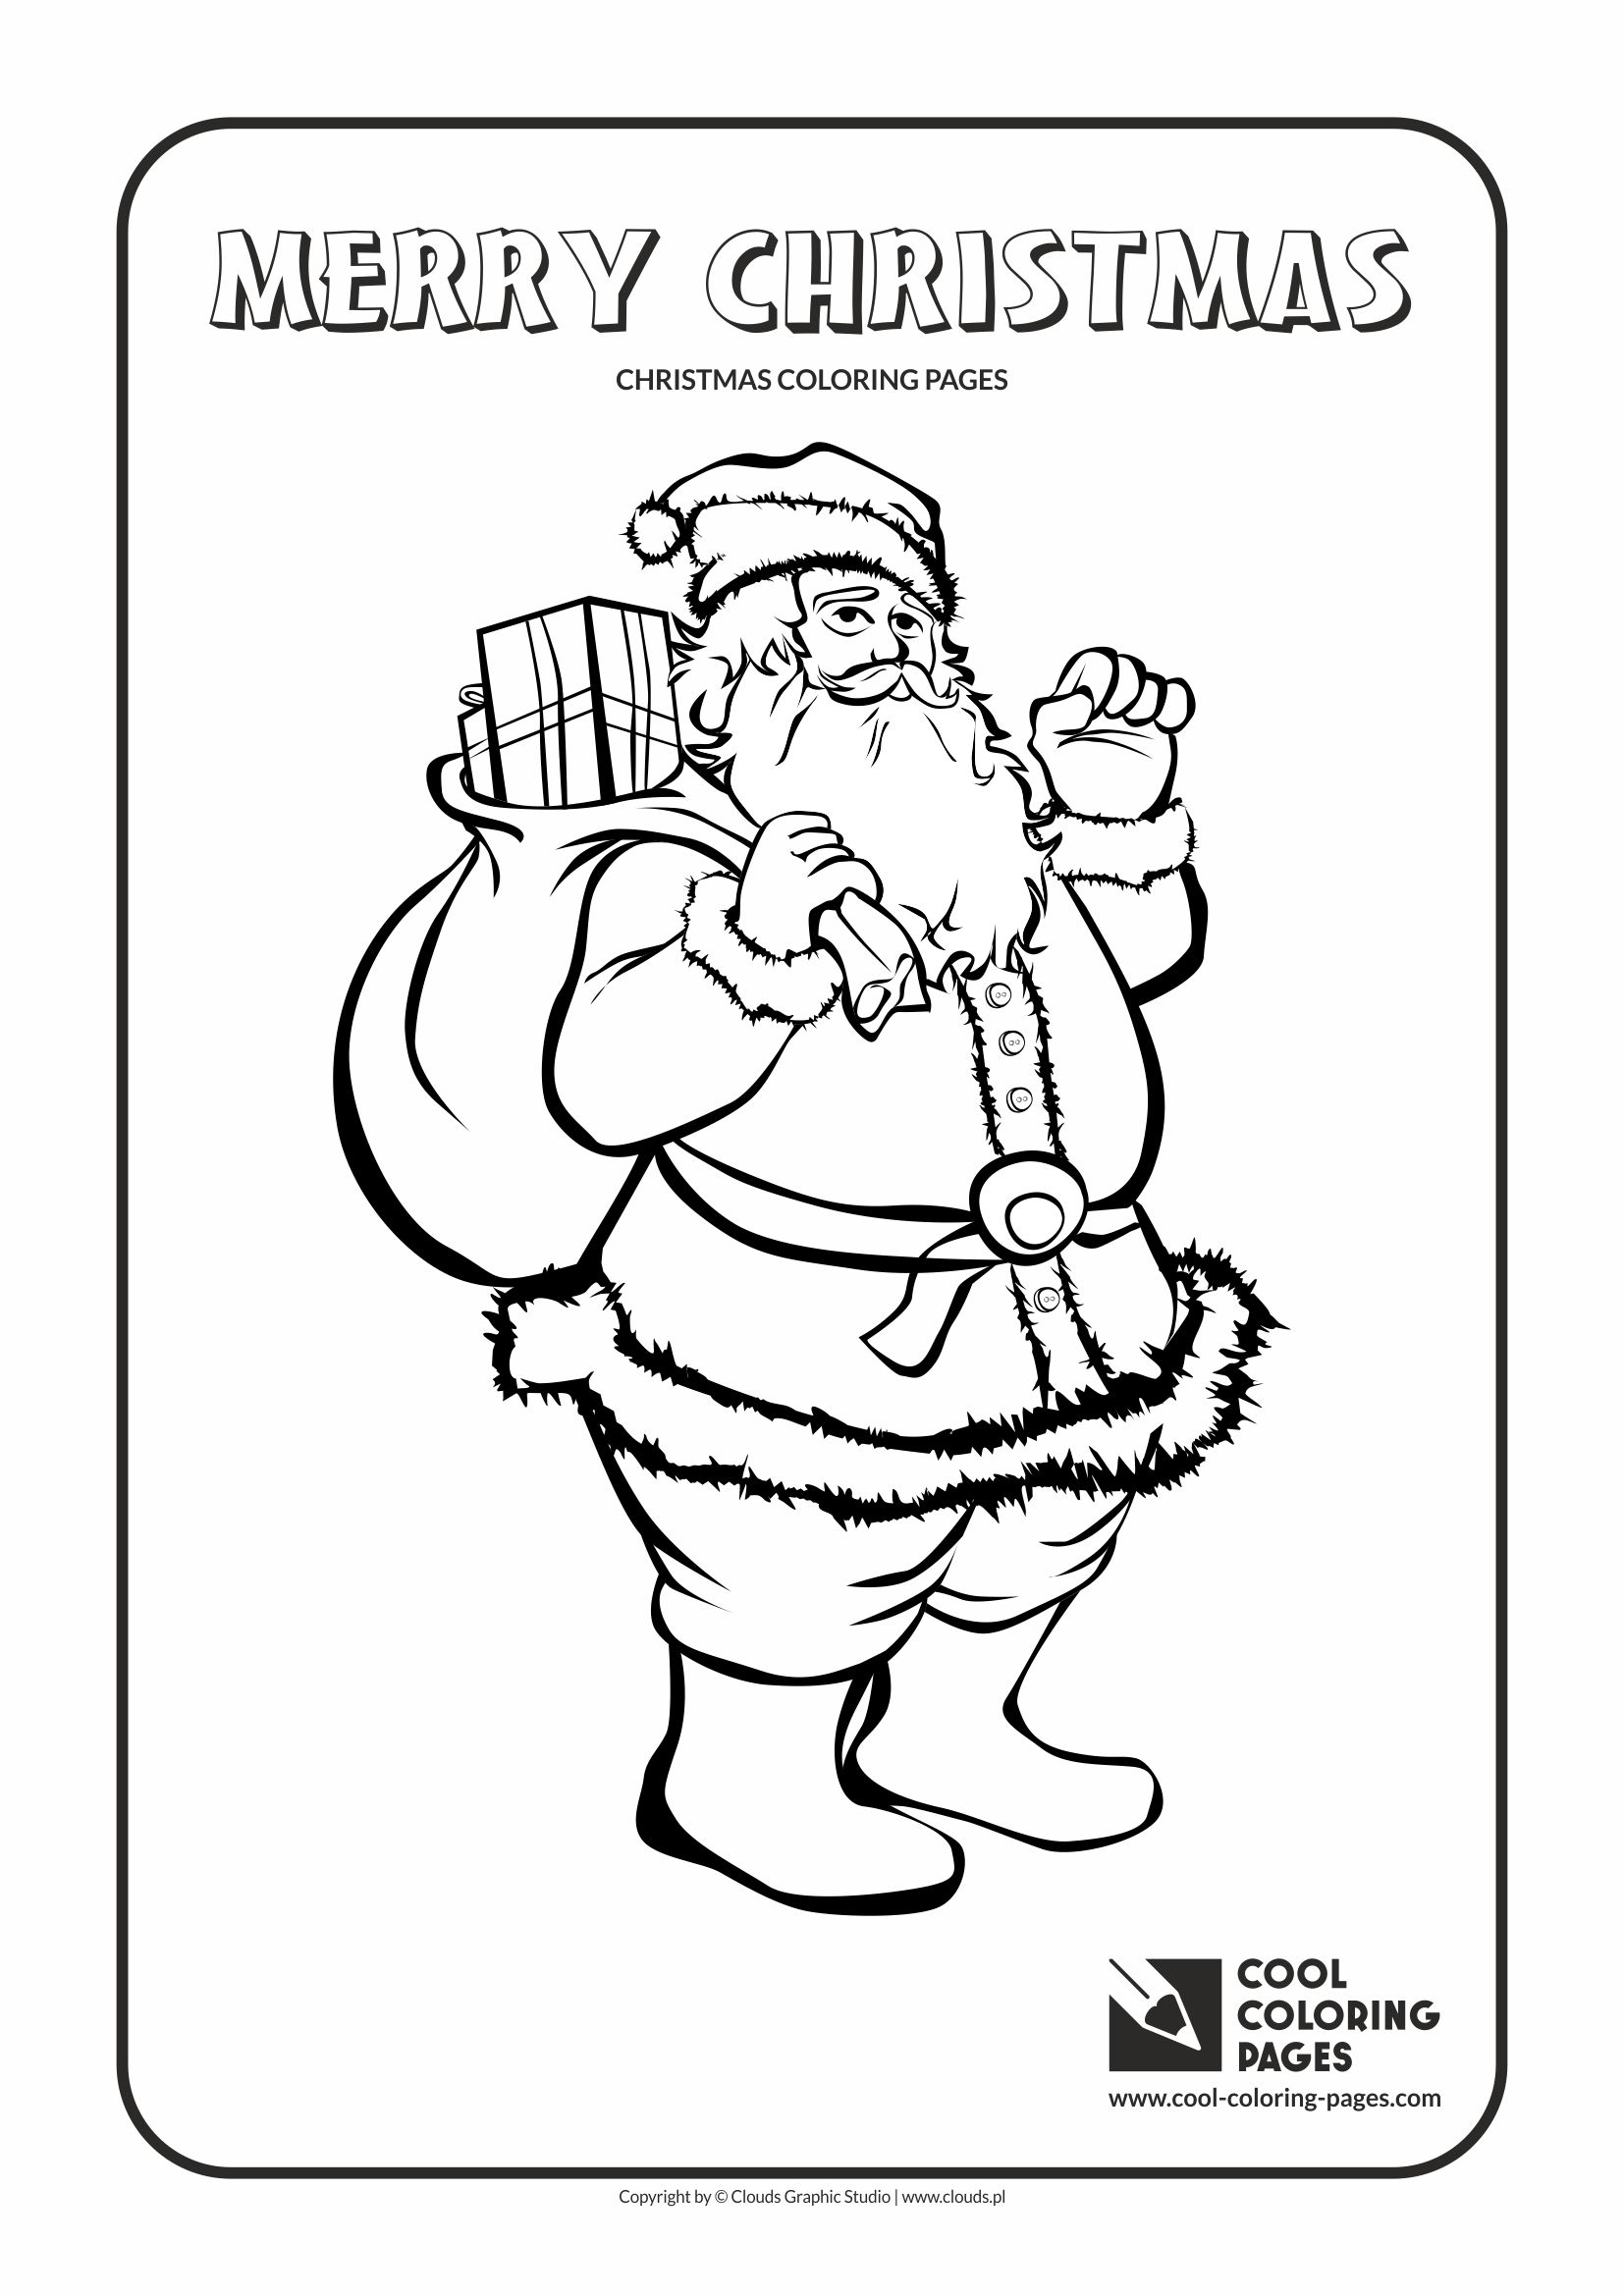 Cool Coloring Pages - Holidays / Santa Claus no 2 / Coloring page with Santa Claus no 2